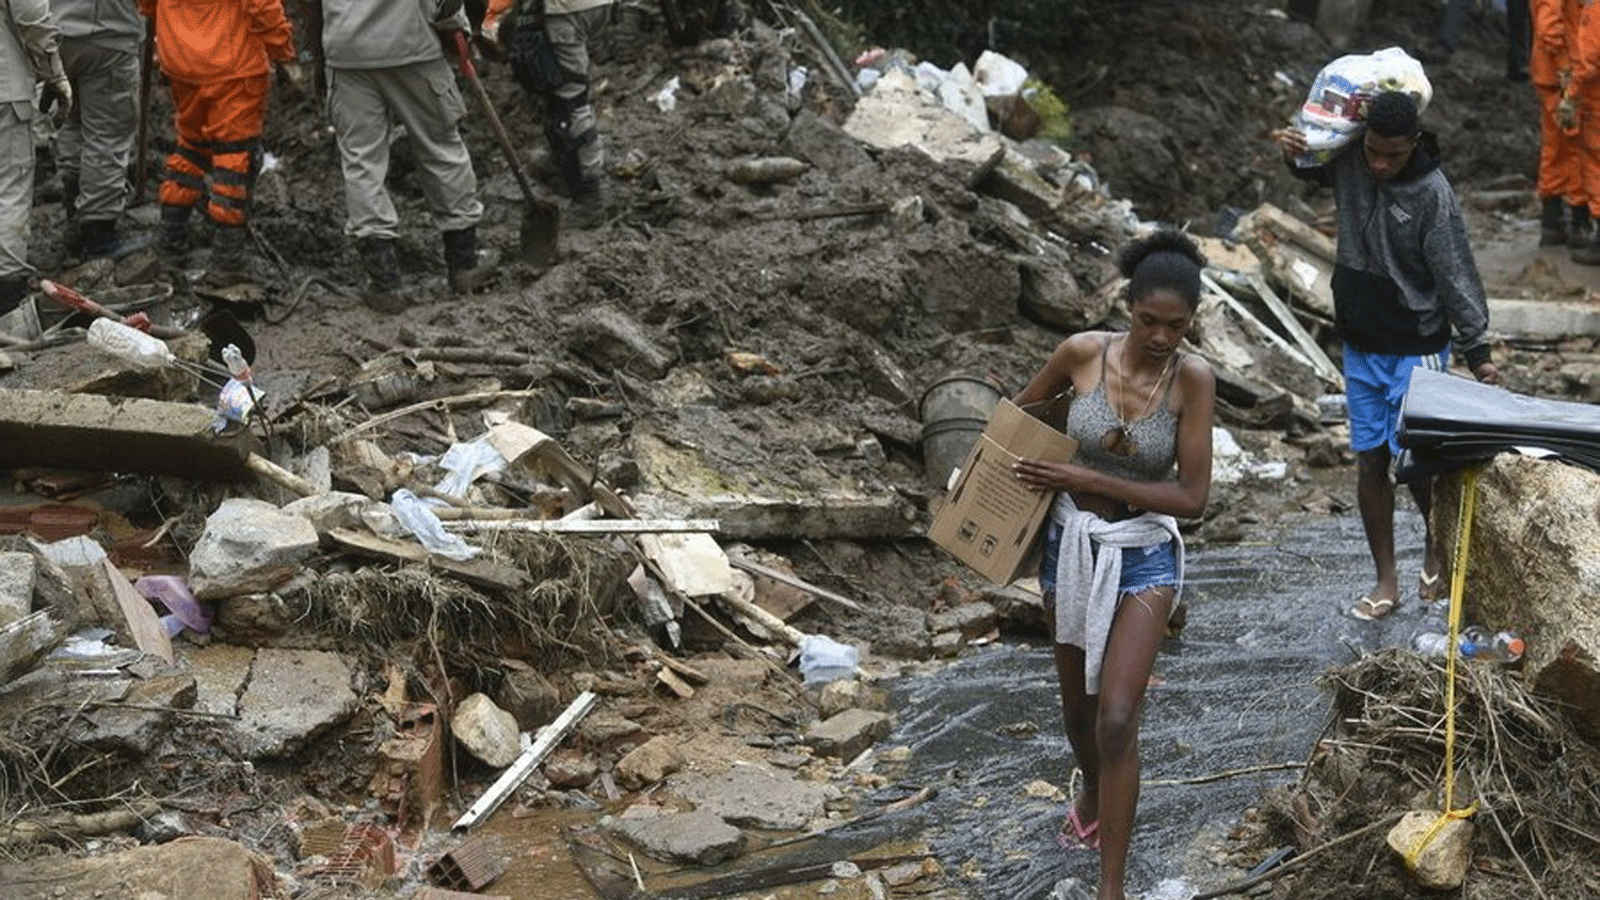 فيضانات وانهيارات أرضية ناجمة عن أمطار غزيرة في ولاية ريو دي جانيرو في البرازيل قتلت ثمانية أشخاص على الأقل بينهم ستة أطفال وفقد 13 آخرين.